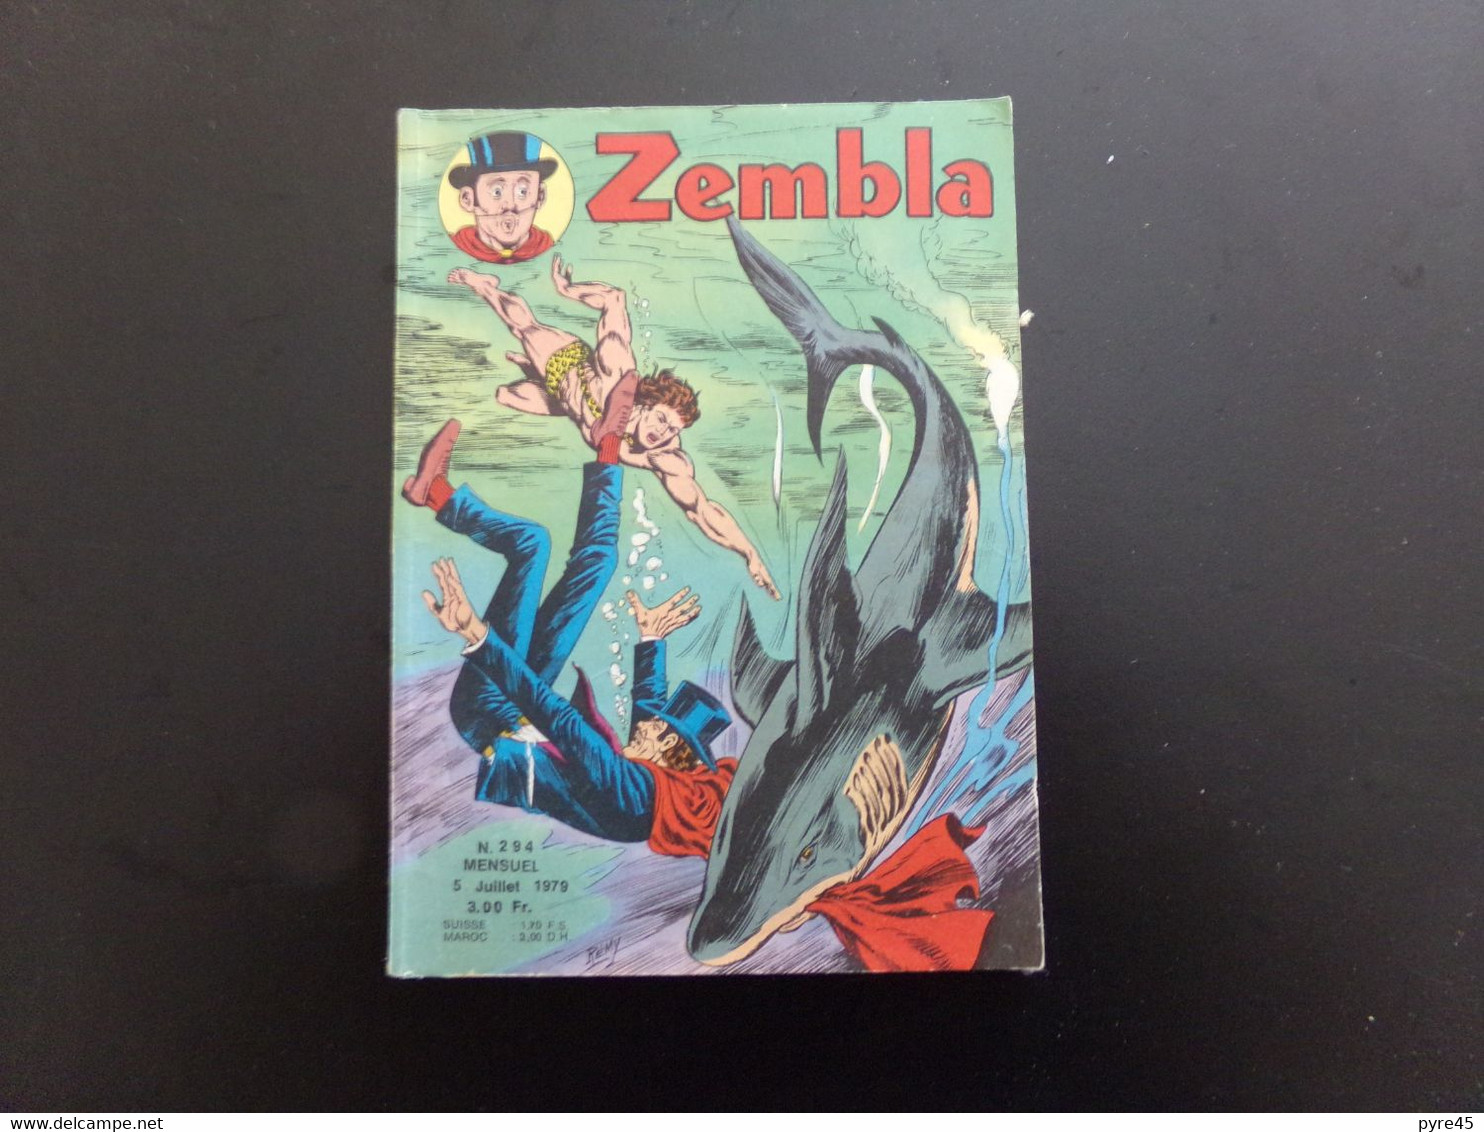 Petit Format " Zembla " N° 294, Juillet 1979, 128 Pages - Zembla